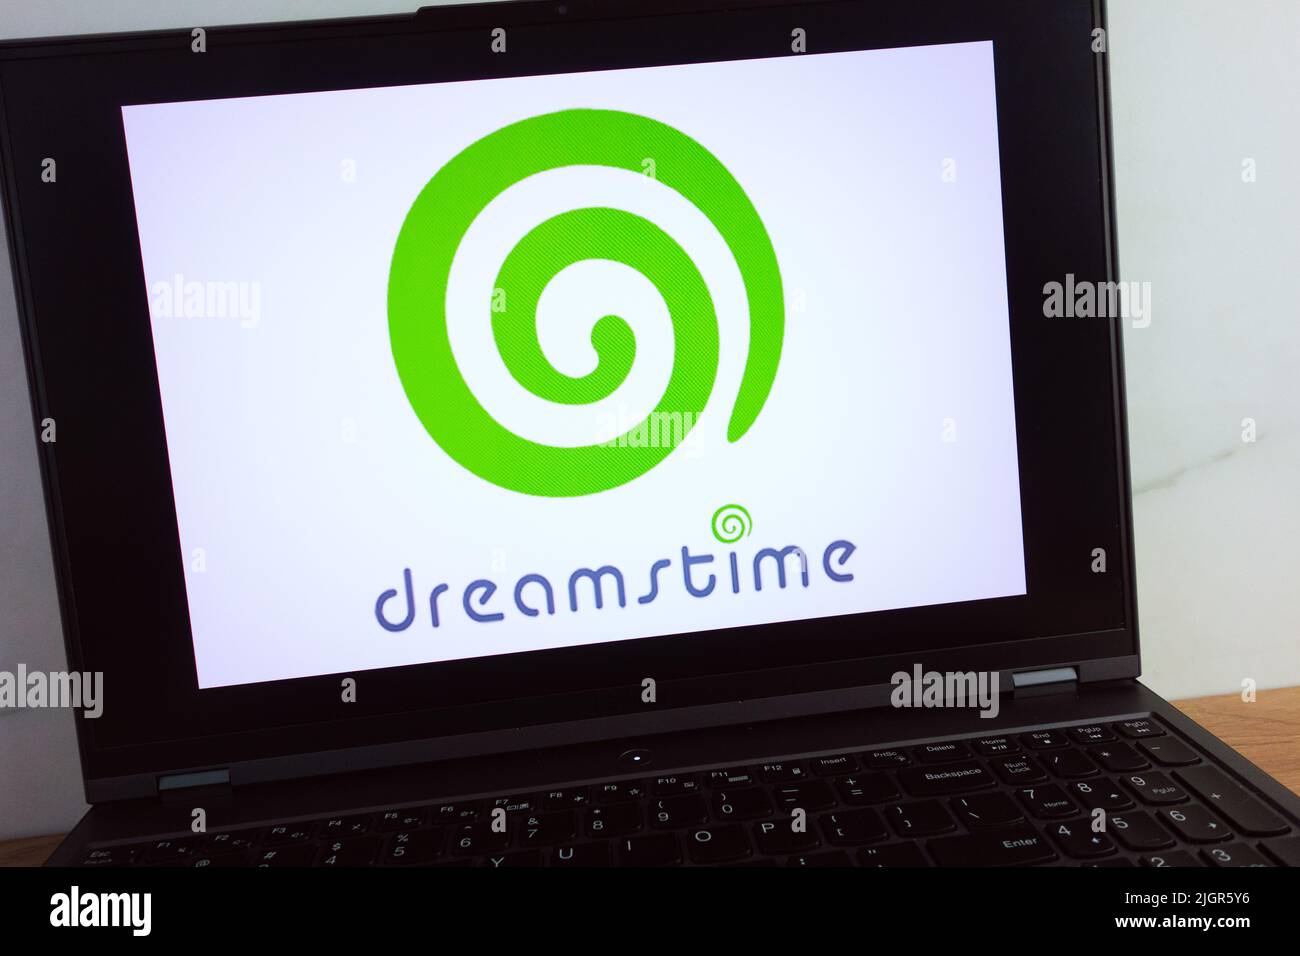 KONSKIE, POLONIA - 11 de julio de 2022: El logotipo del servicio de fotografía de Dreamstime aparece en la pantalla del ordenador portátil Foto de stock